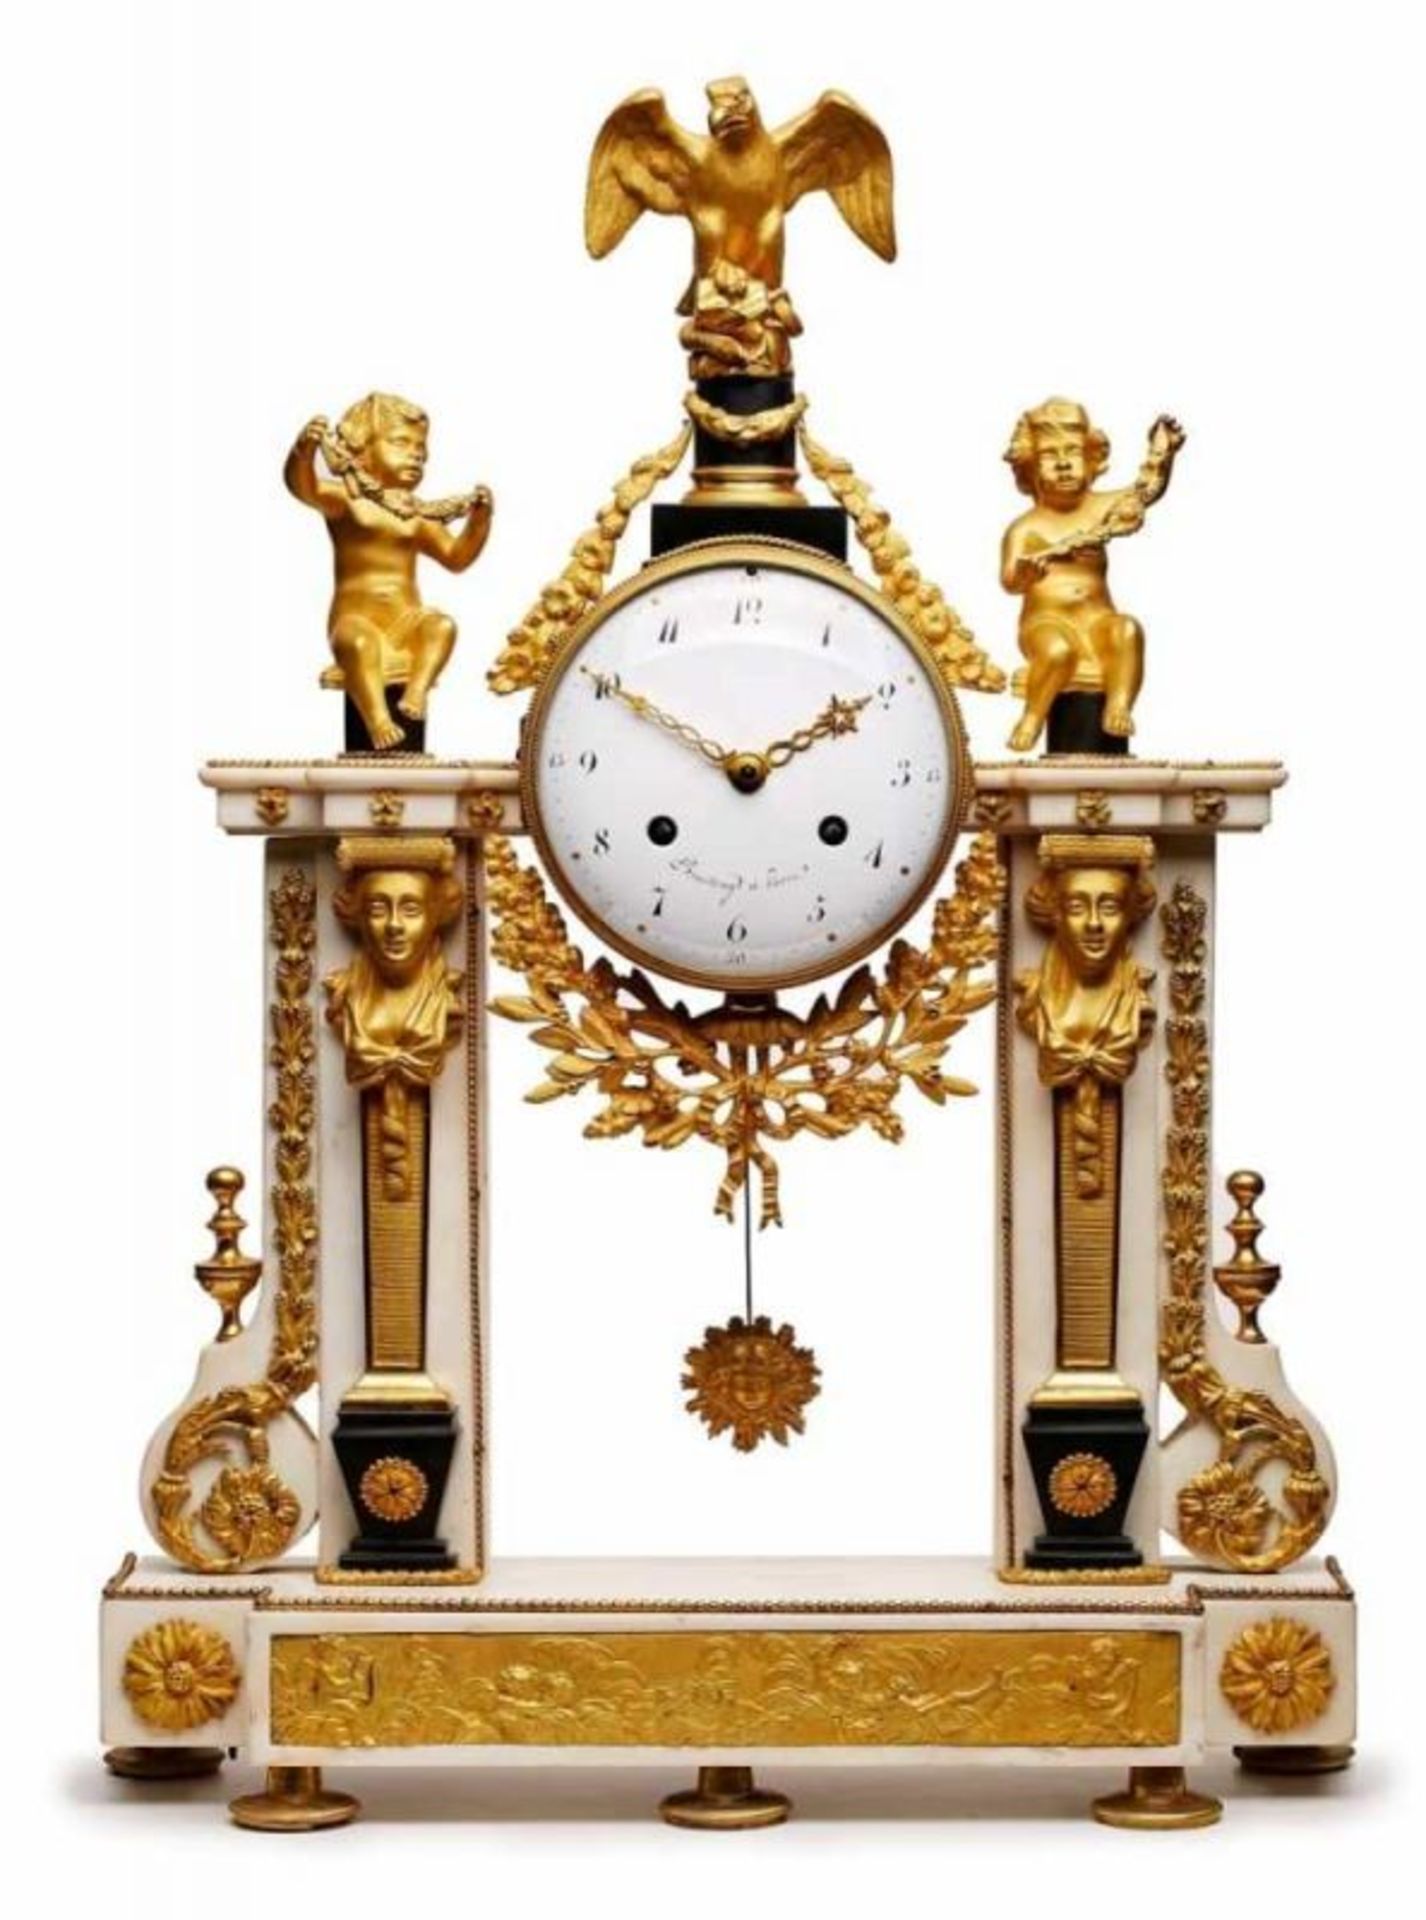 Prunk-Pendule, Paris um 1790. Weißer Marmor, vergoldete Bronze, Schiefer- Details. Architekton. - Bild 2 aus 3